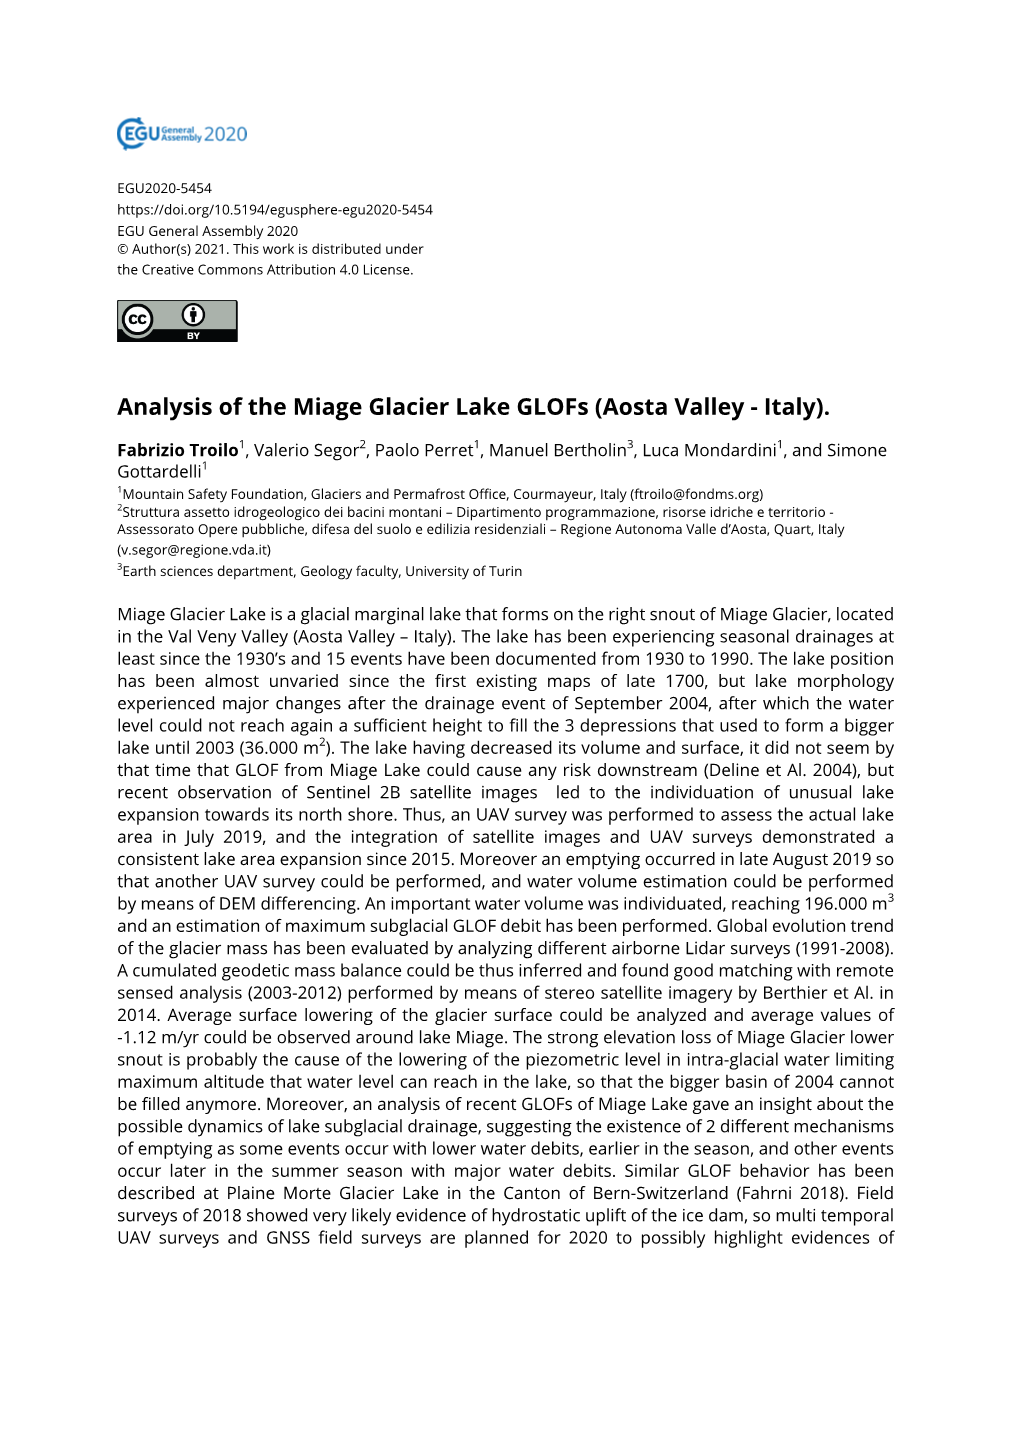 Analysis of the Miage Glacier Lake Glofs (Aosta Valley - Italy)